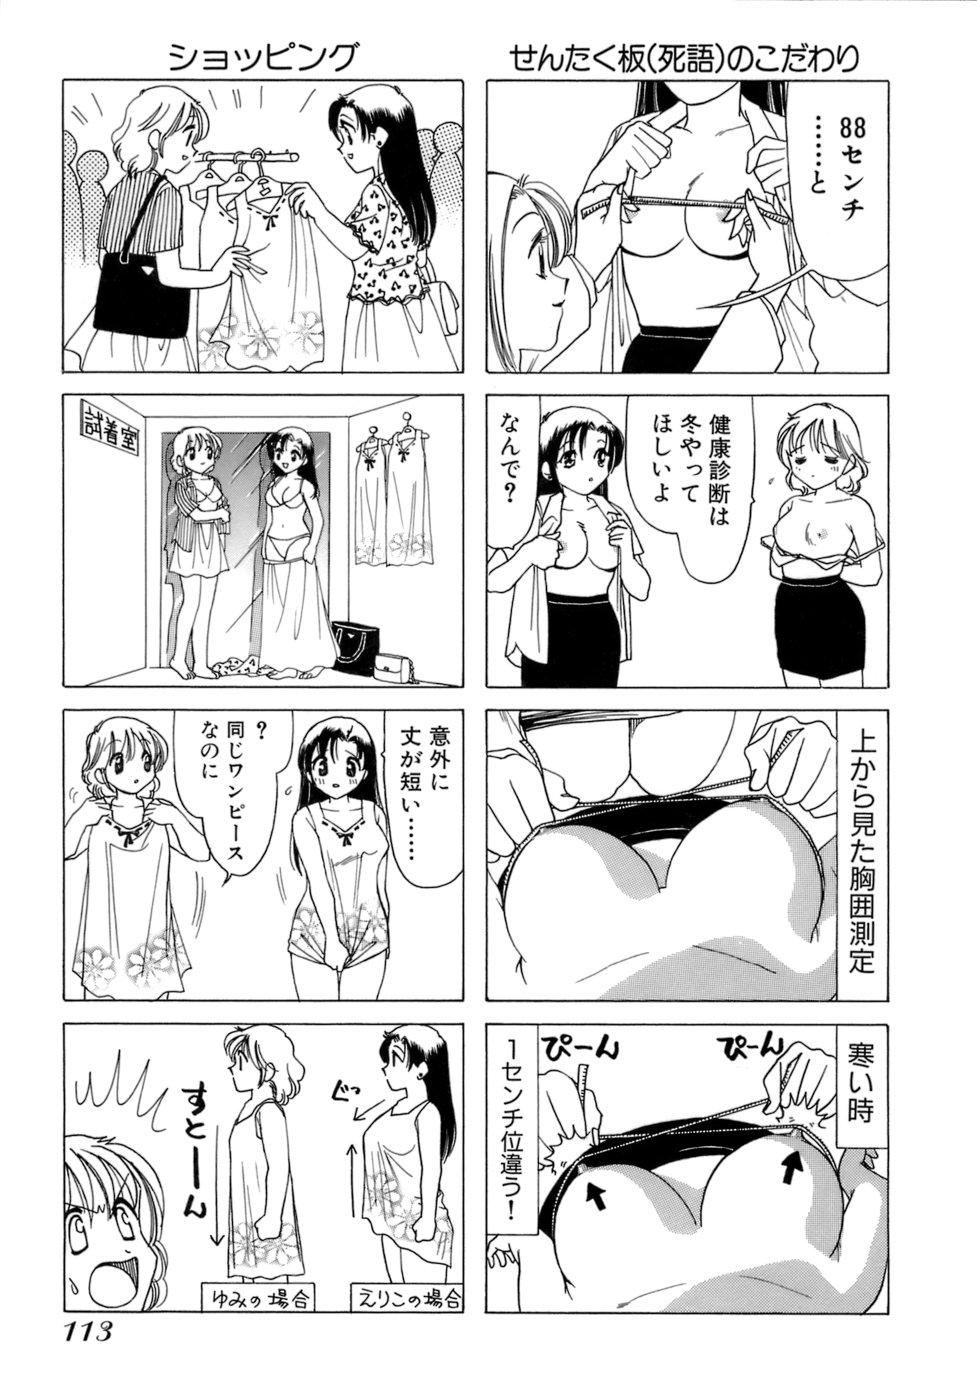 Eriko-kun, Ocha!! Vol.01 115